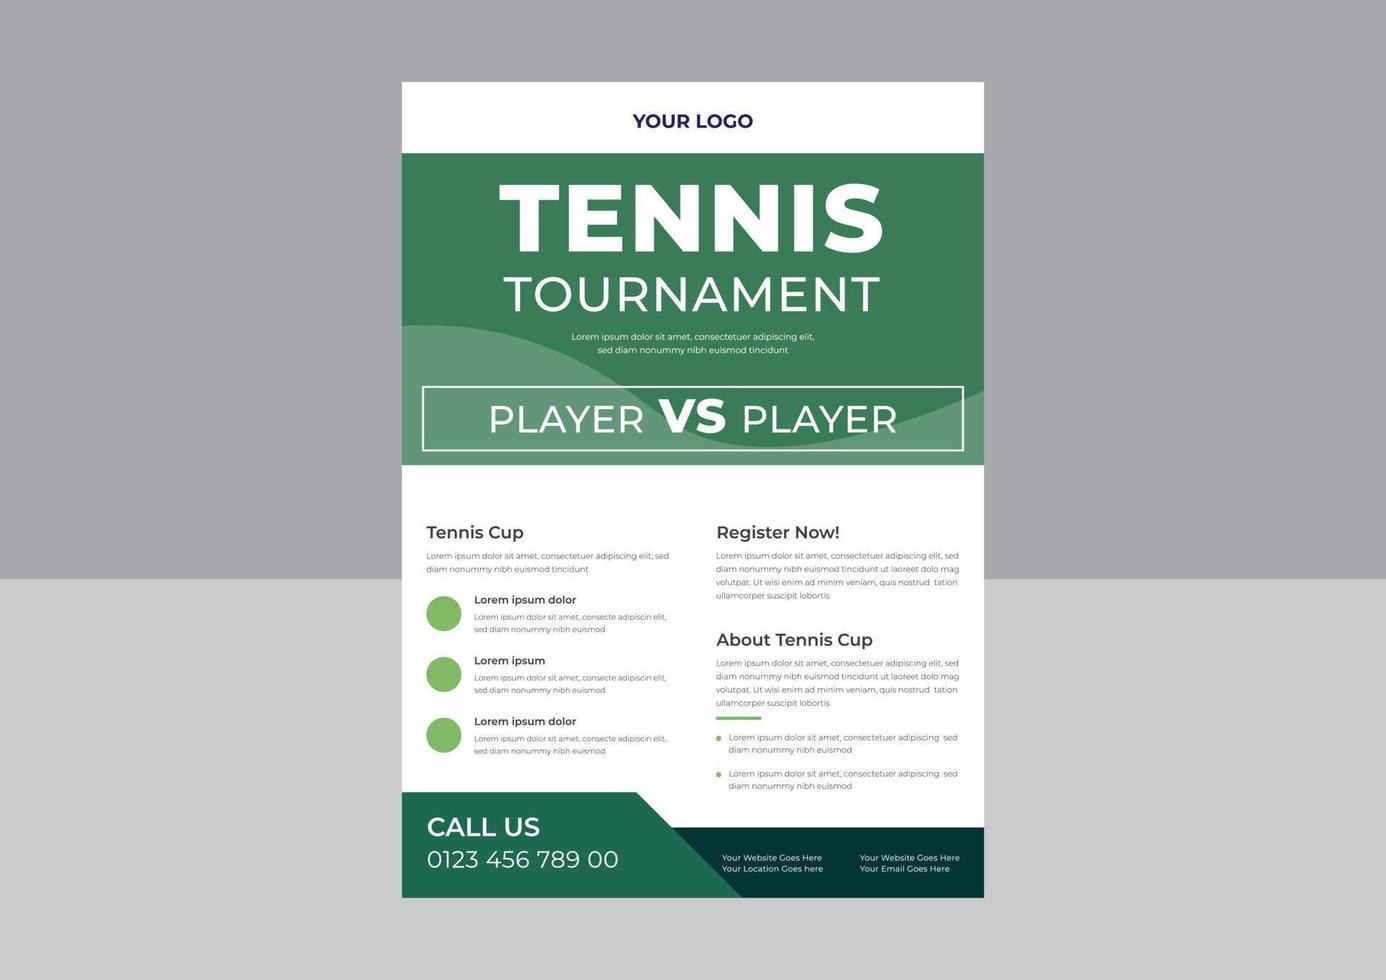 Tennis-Poster-Set-Vektor-Flyer, Tennis-Turnier-Flyer-Design-Vorlage, Tennis-Poster-Set-Vektor, A4-Vorlage, Broschüren-Design, Cover, Flyer, Poster, druckfertig vektor